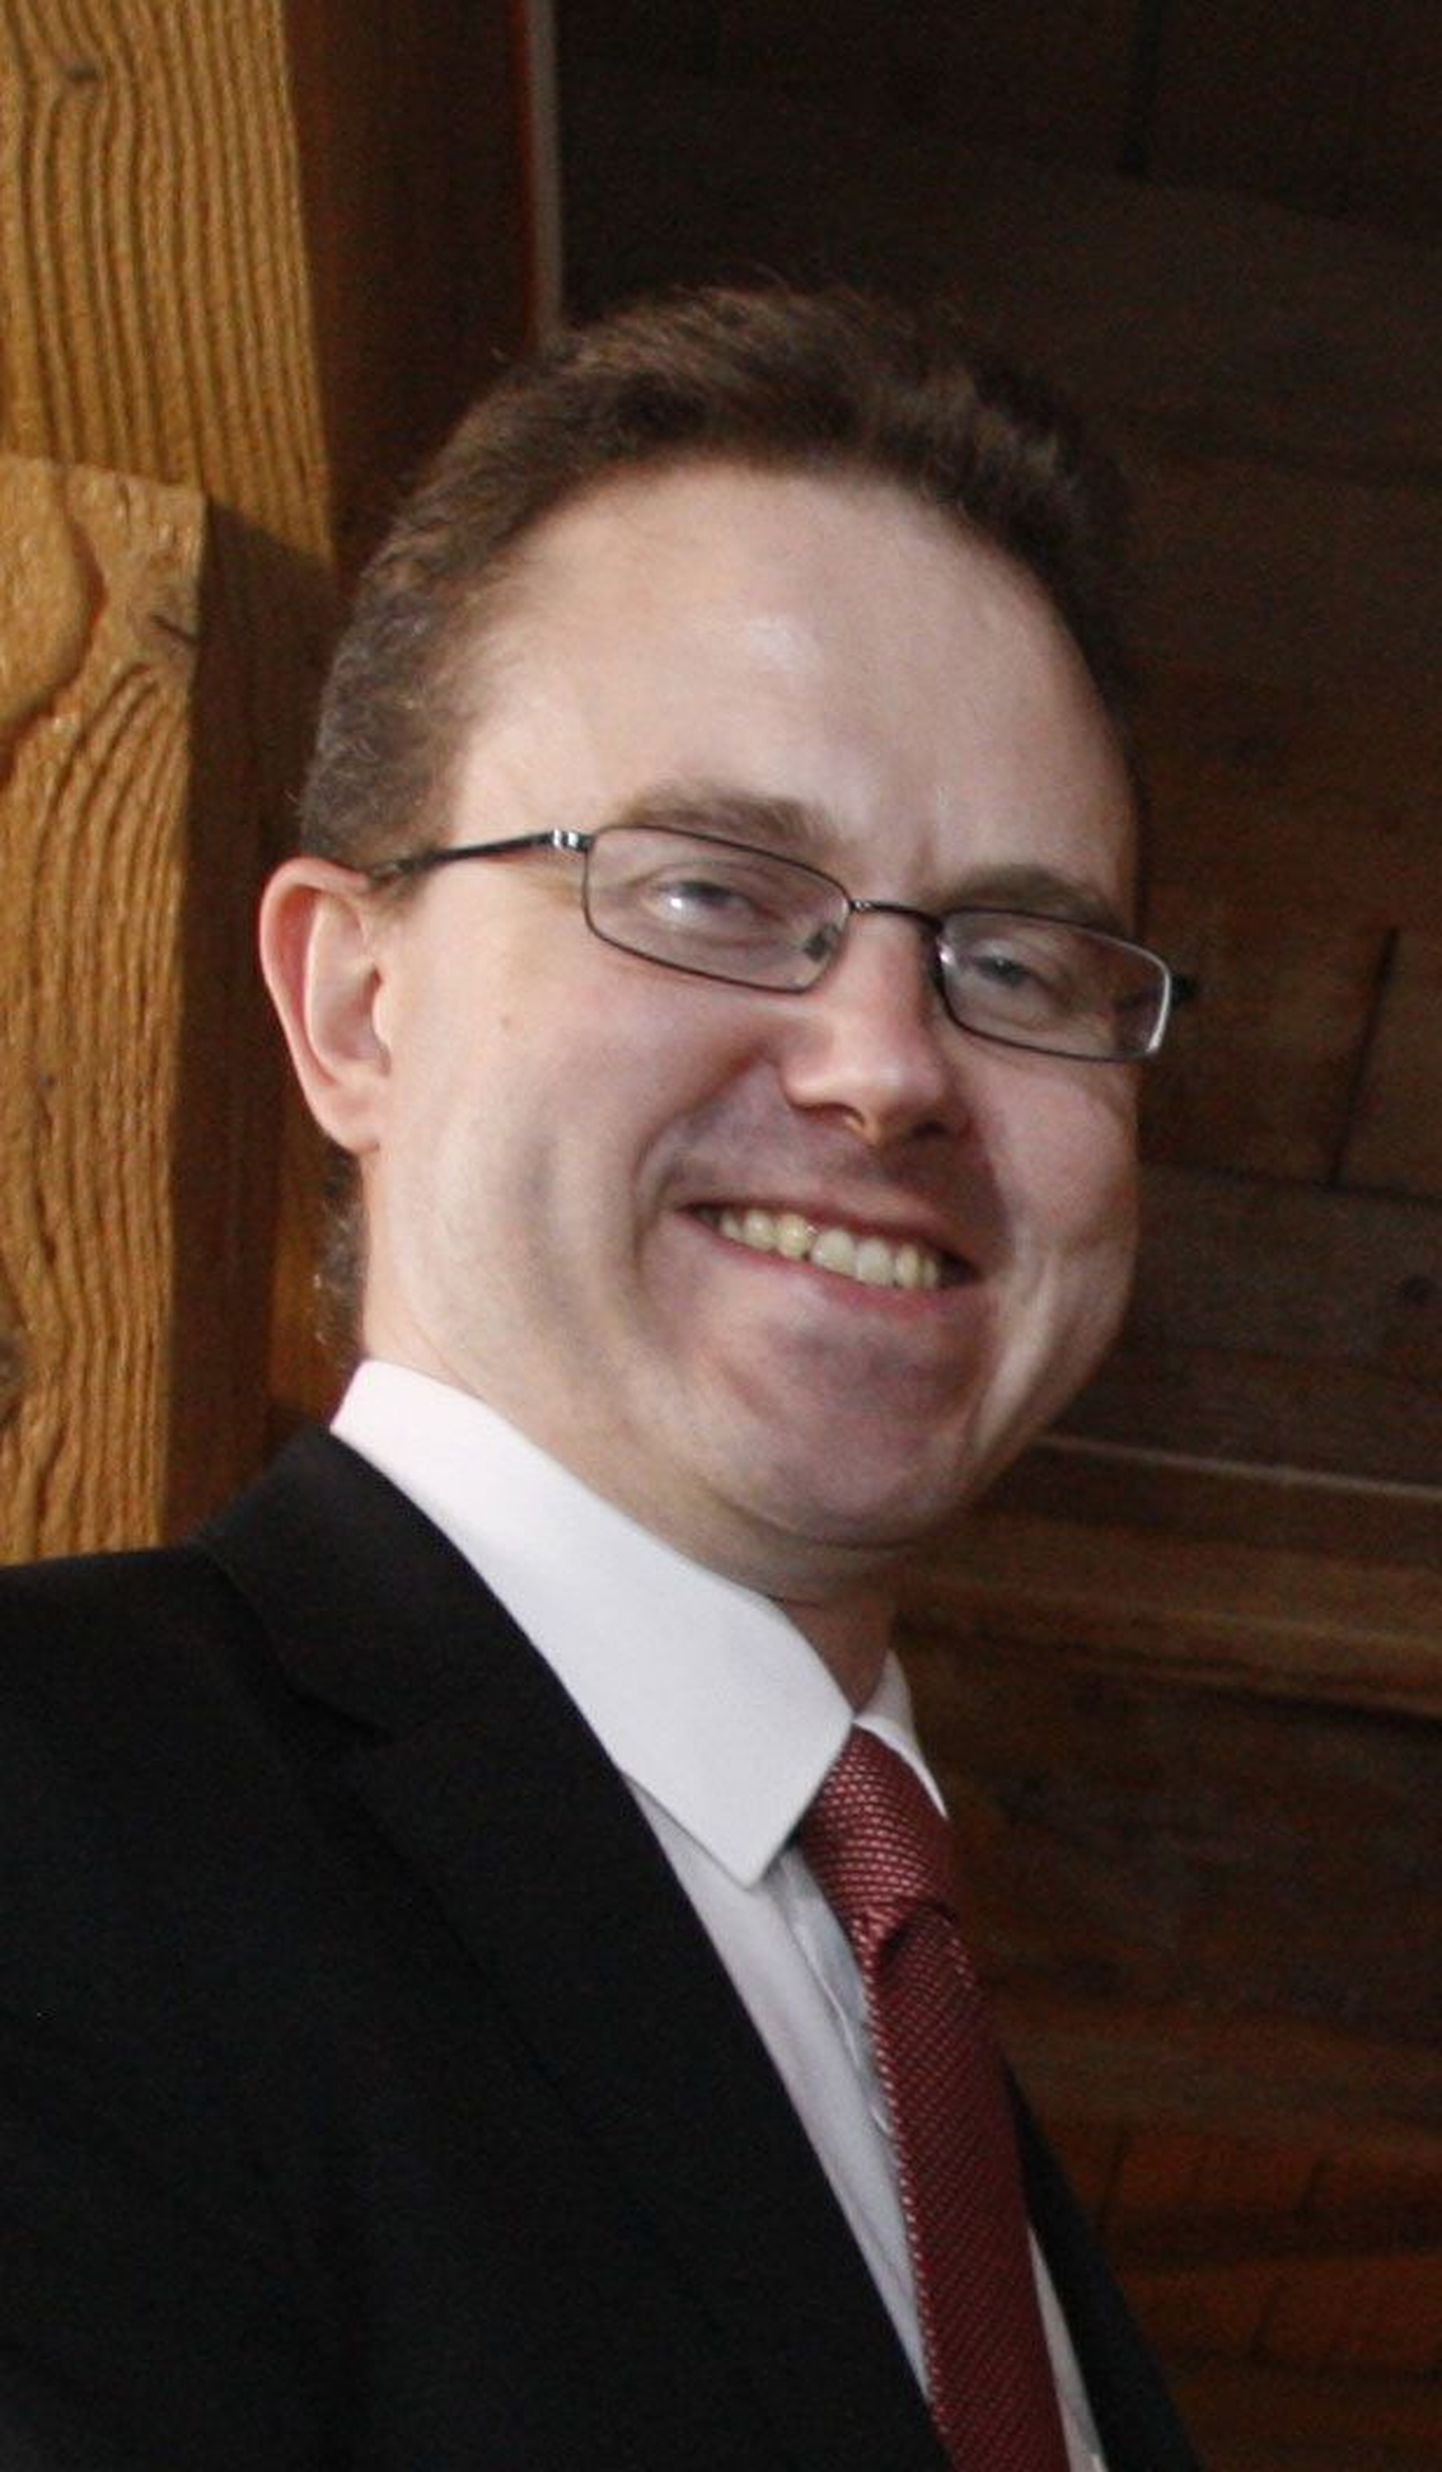 Chris Holtby
Ühendkuningriigi suursaadik Eestis